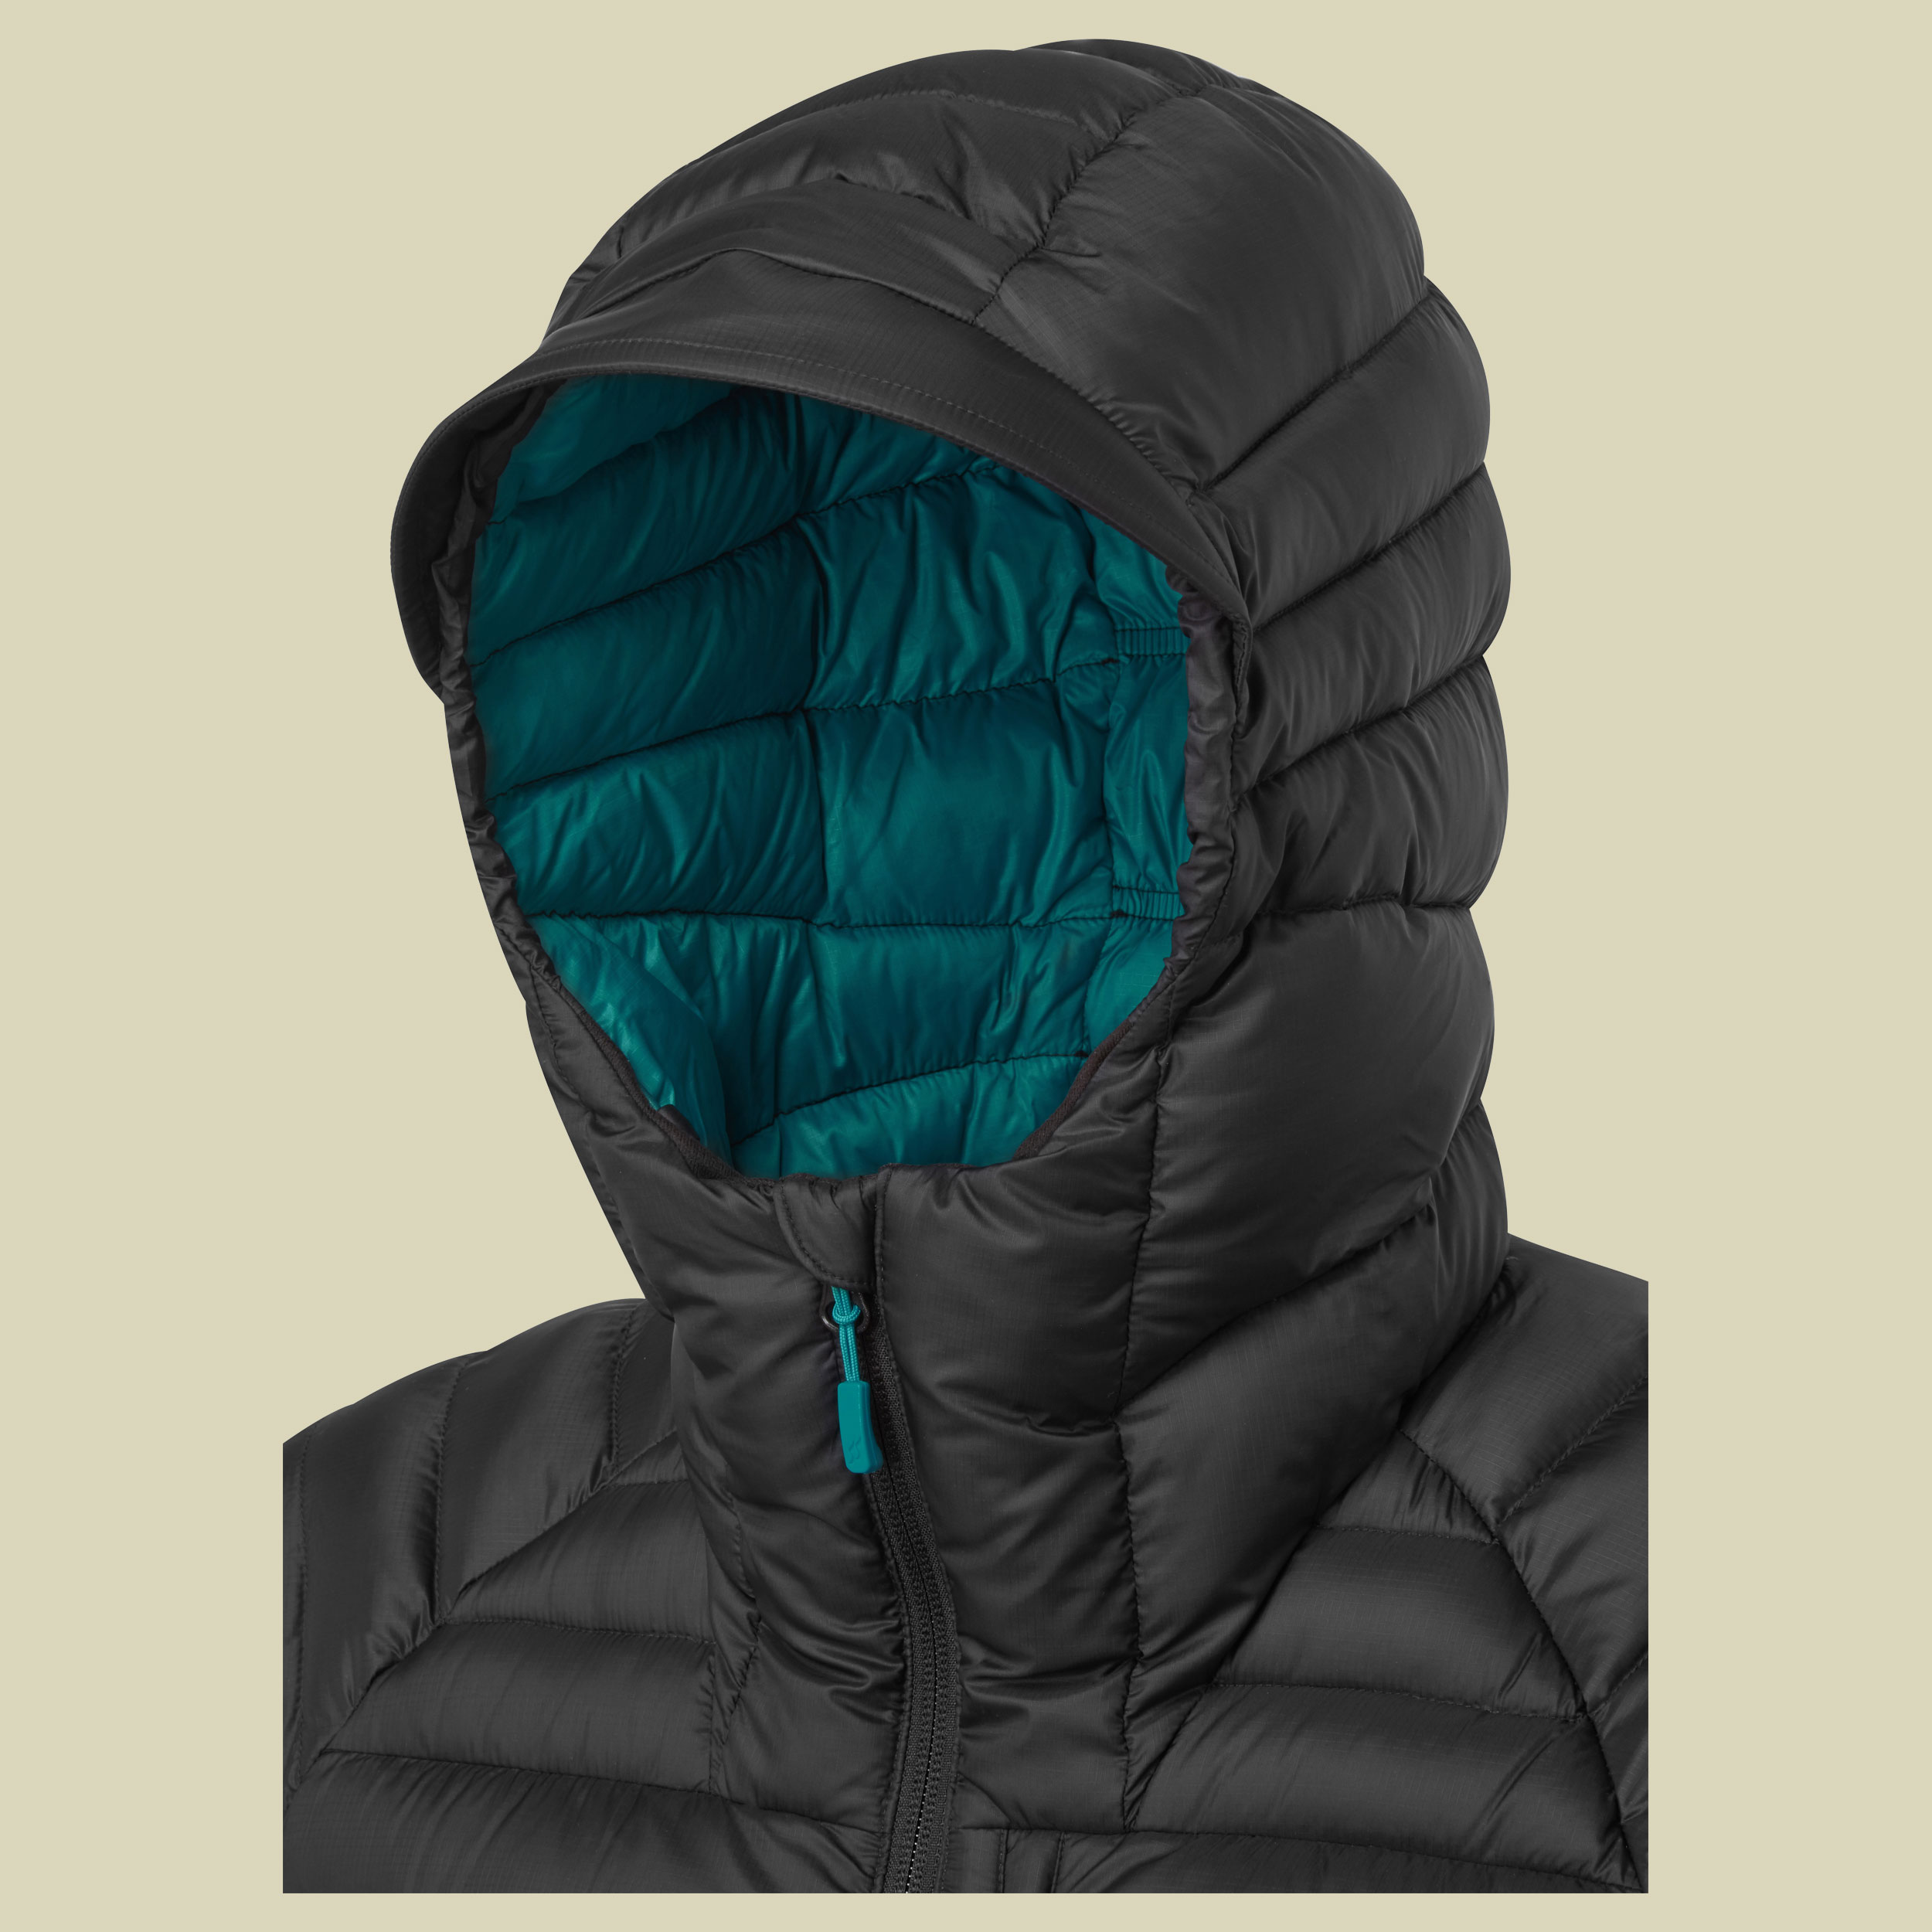 Microlight Alpine Long Jacket Women Größe 44 (16) Farbe black